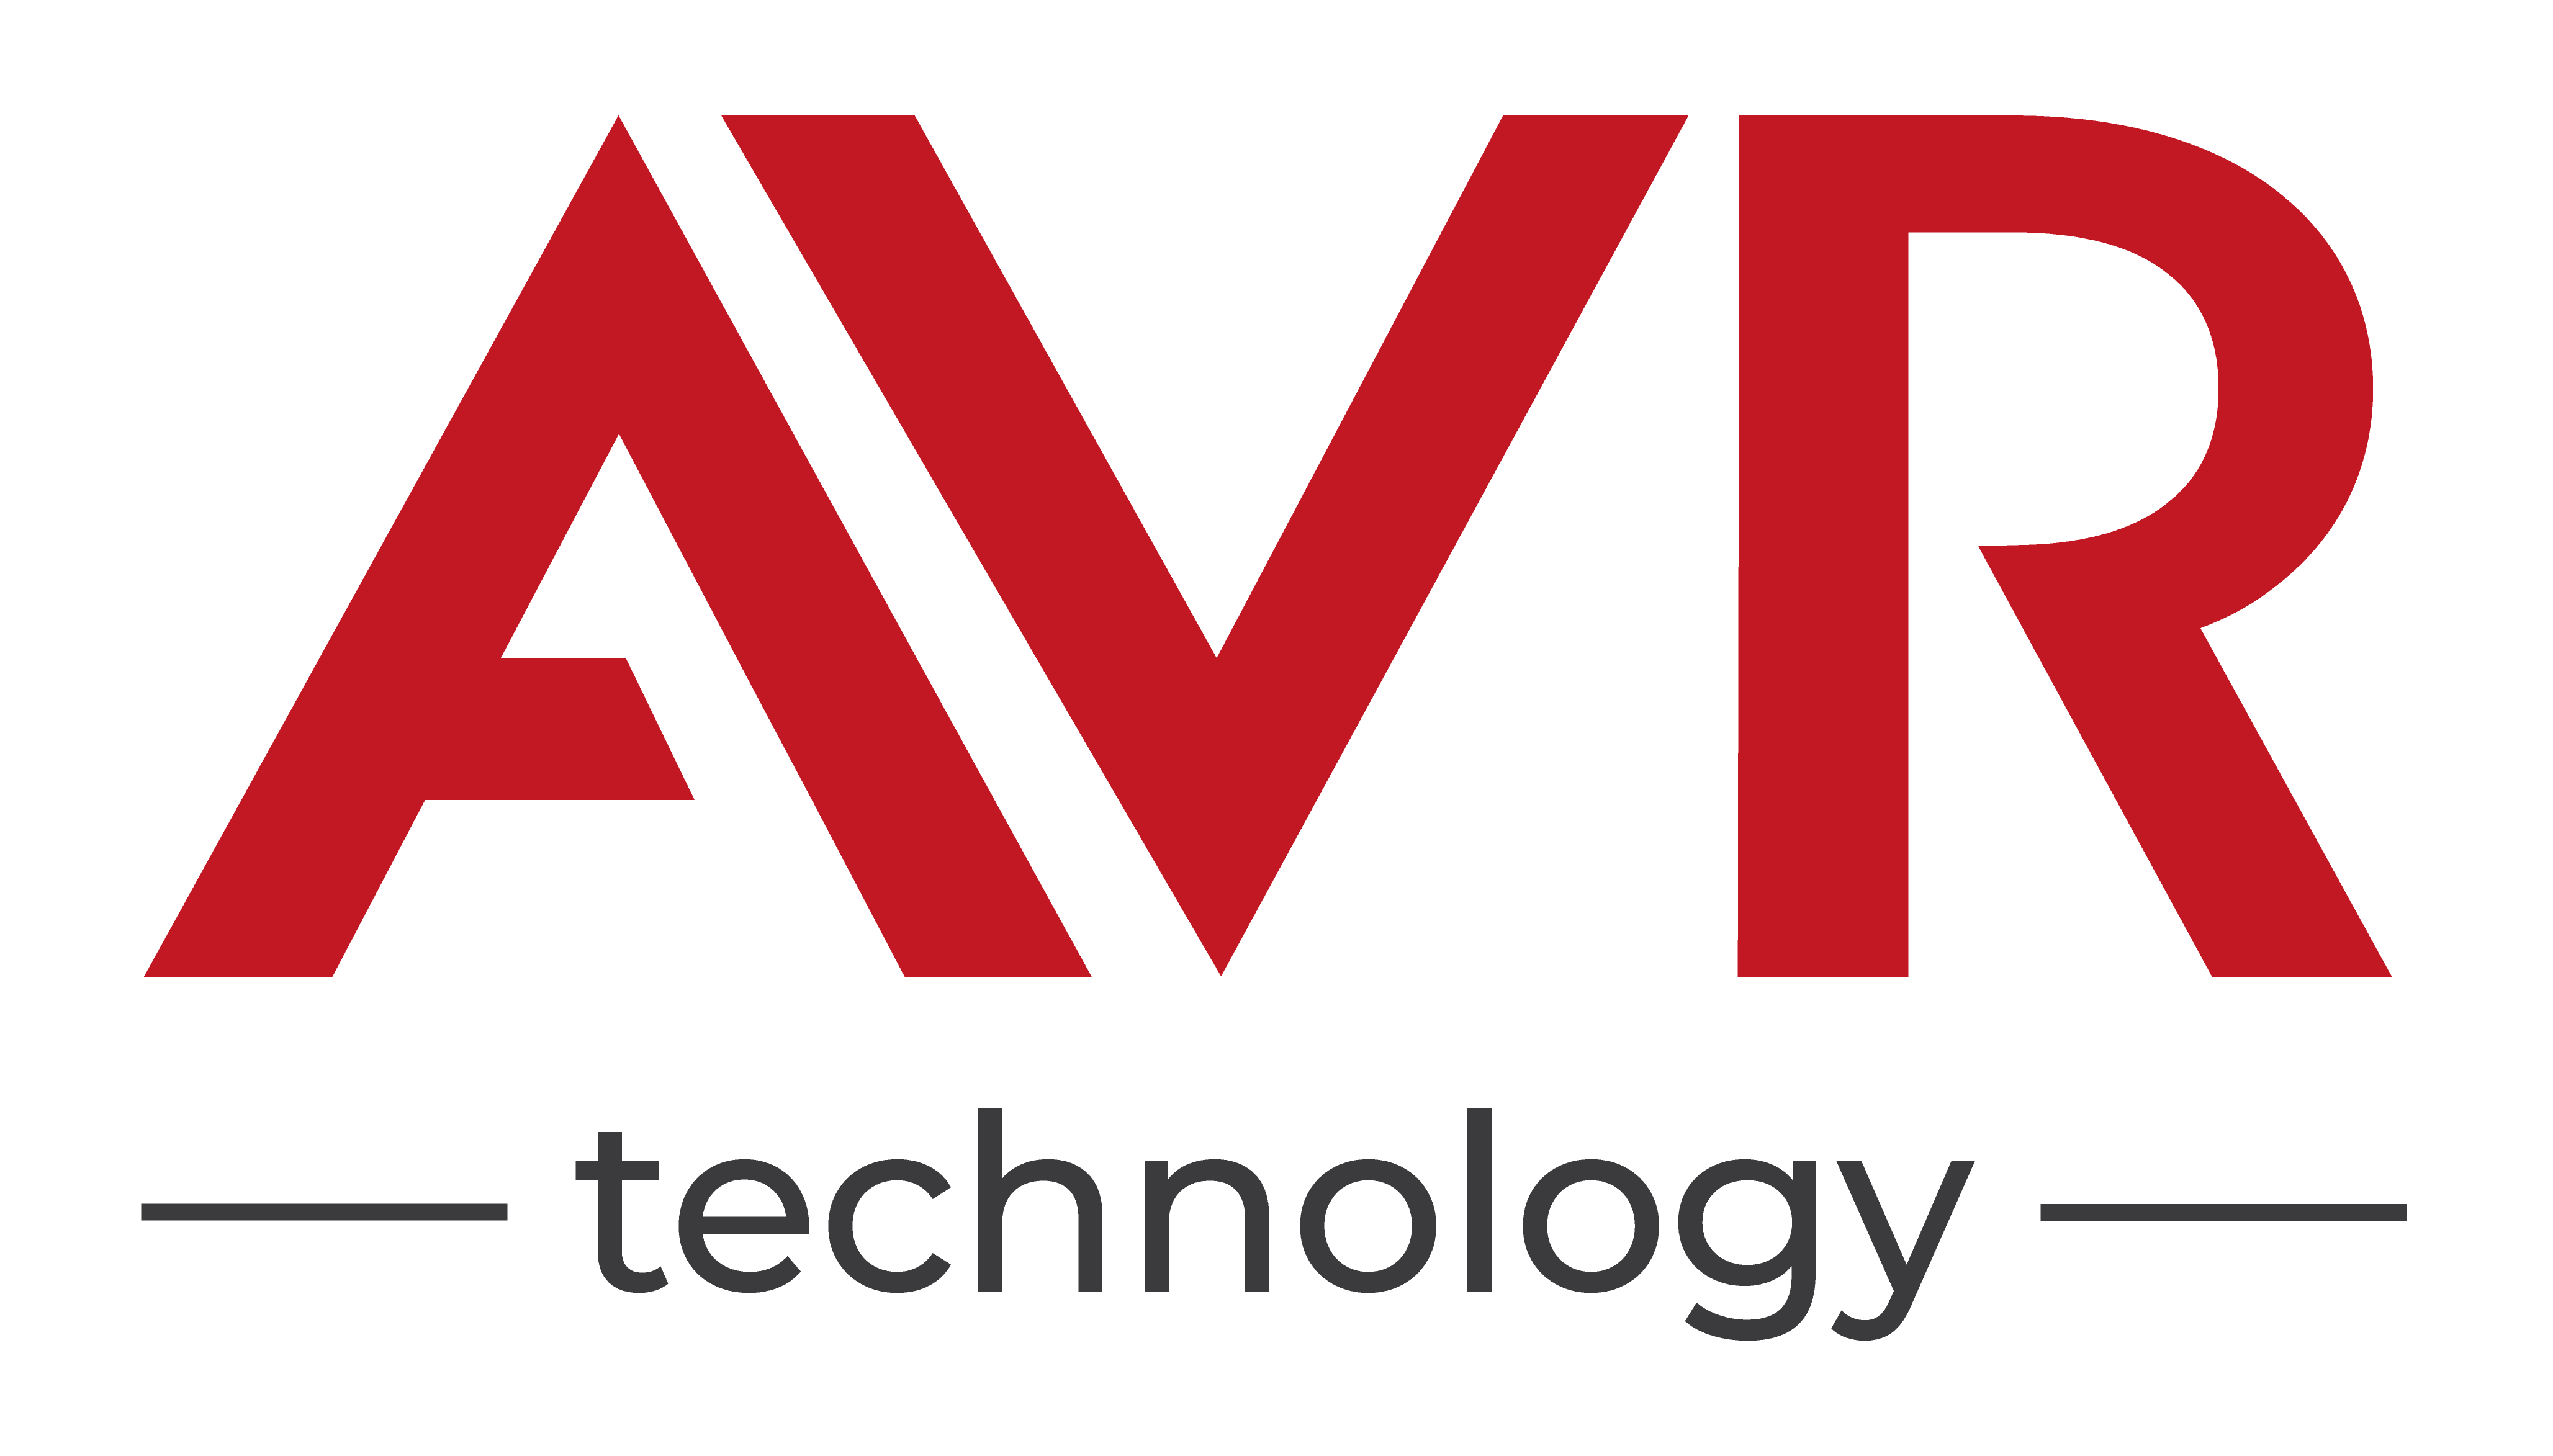 AVR technology